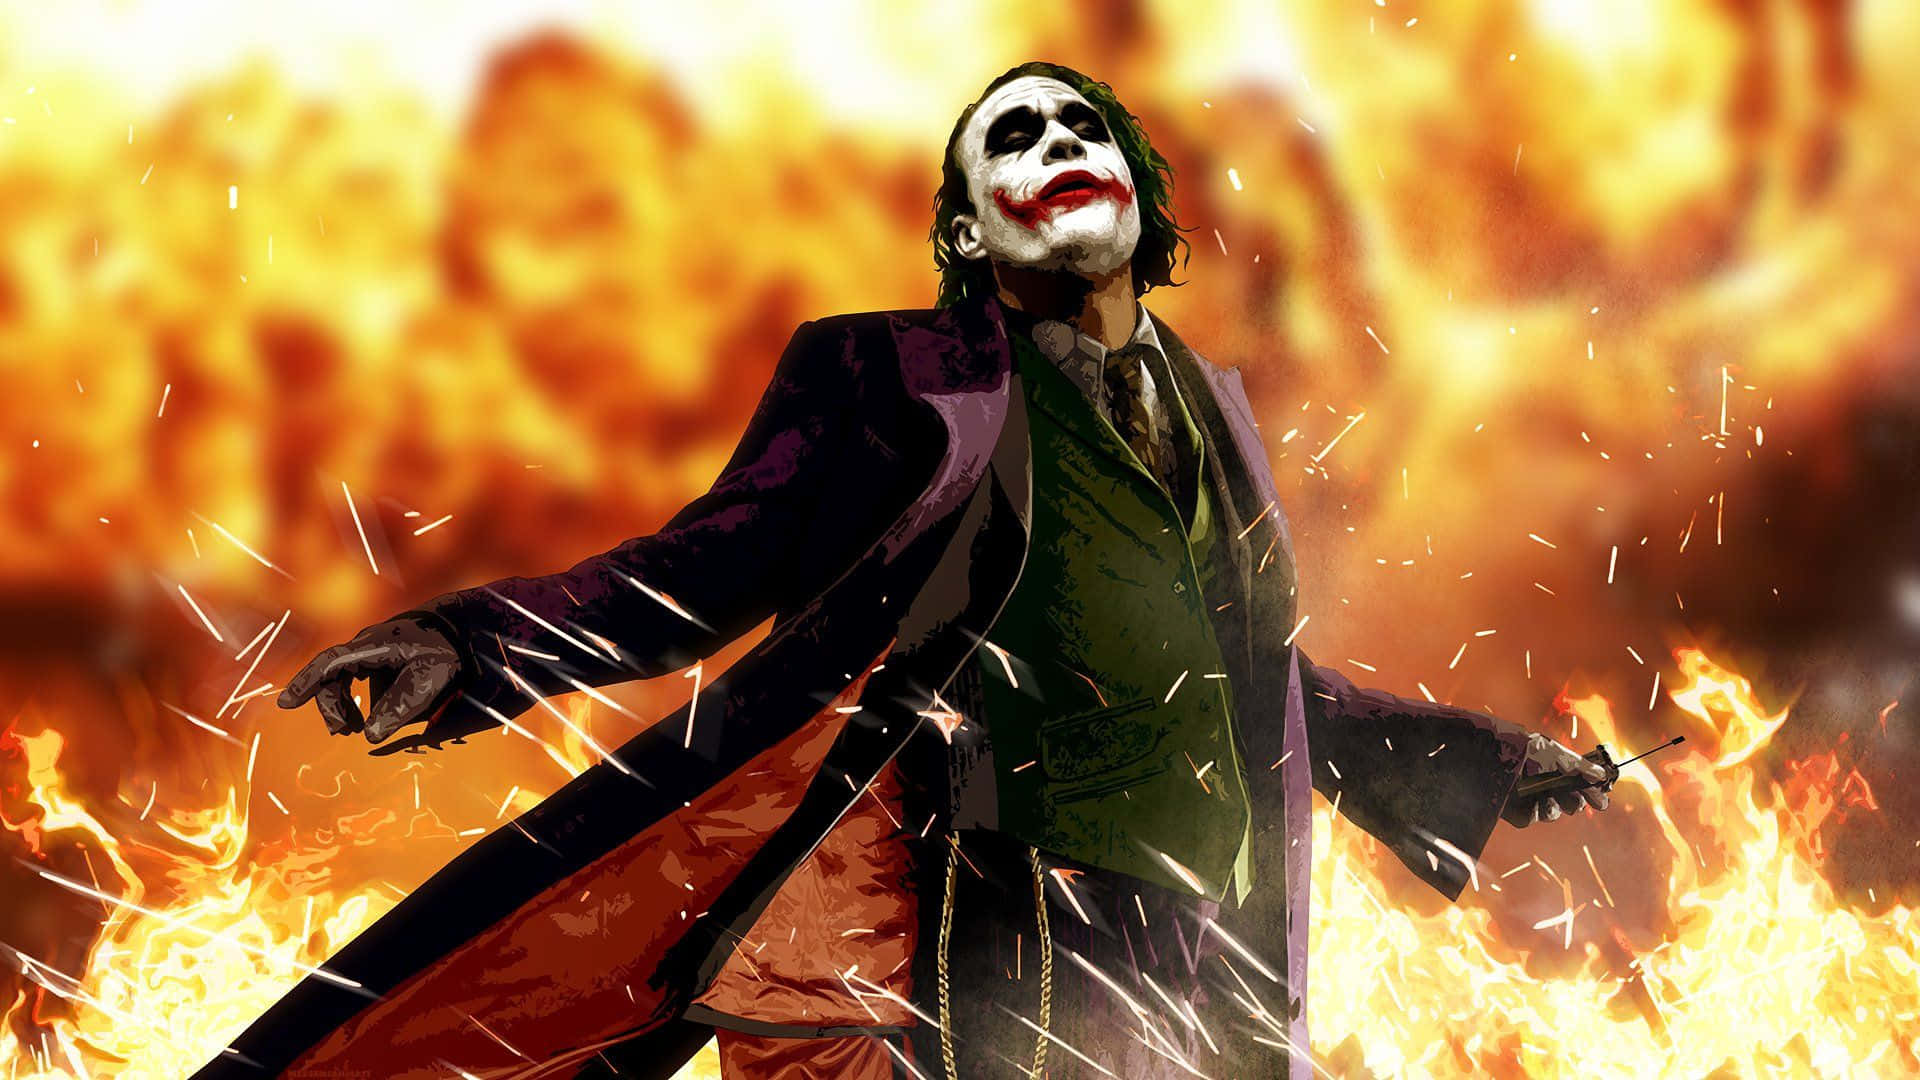 Cool Dangerous Joker Flames Art Background